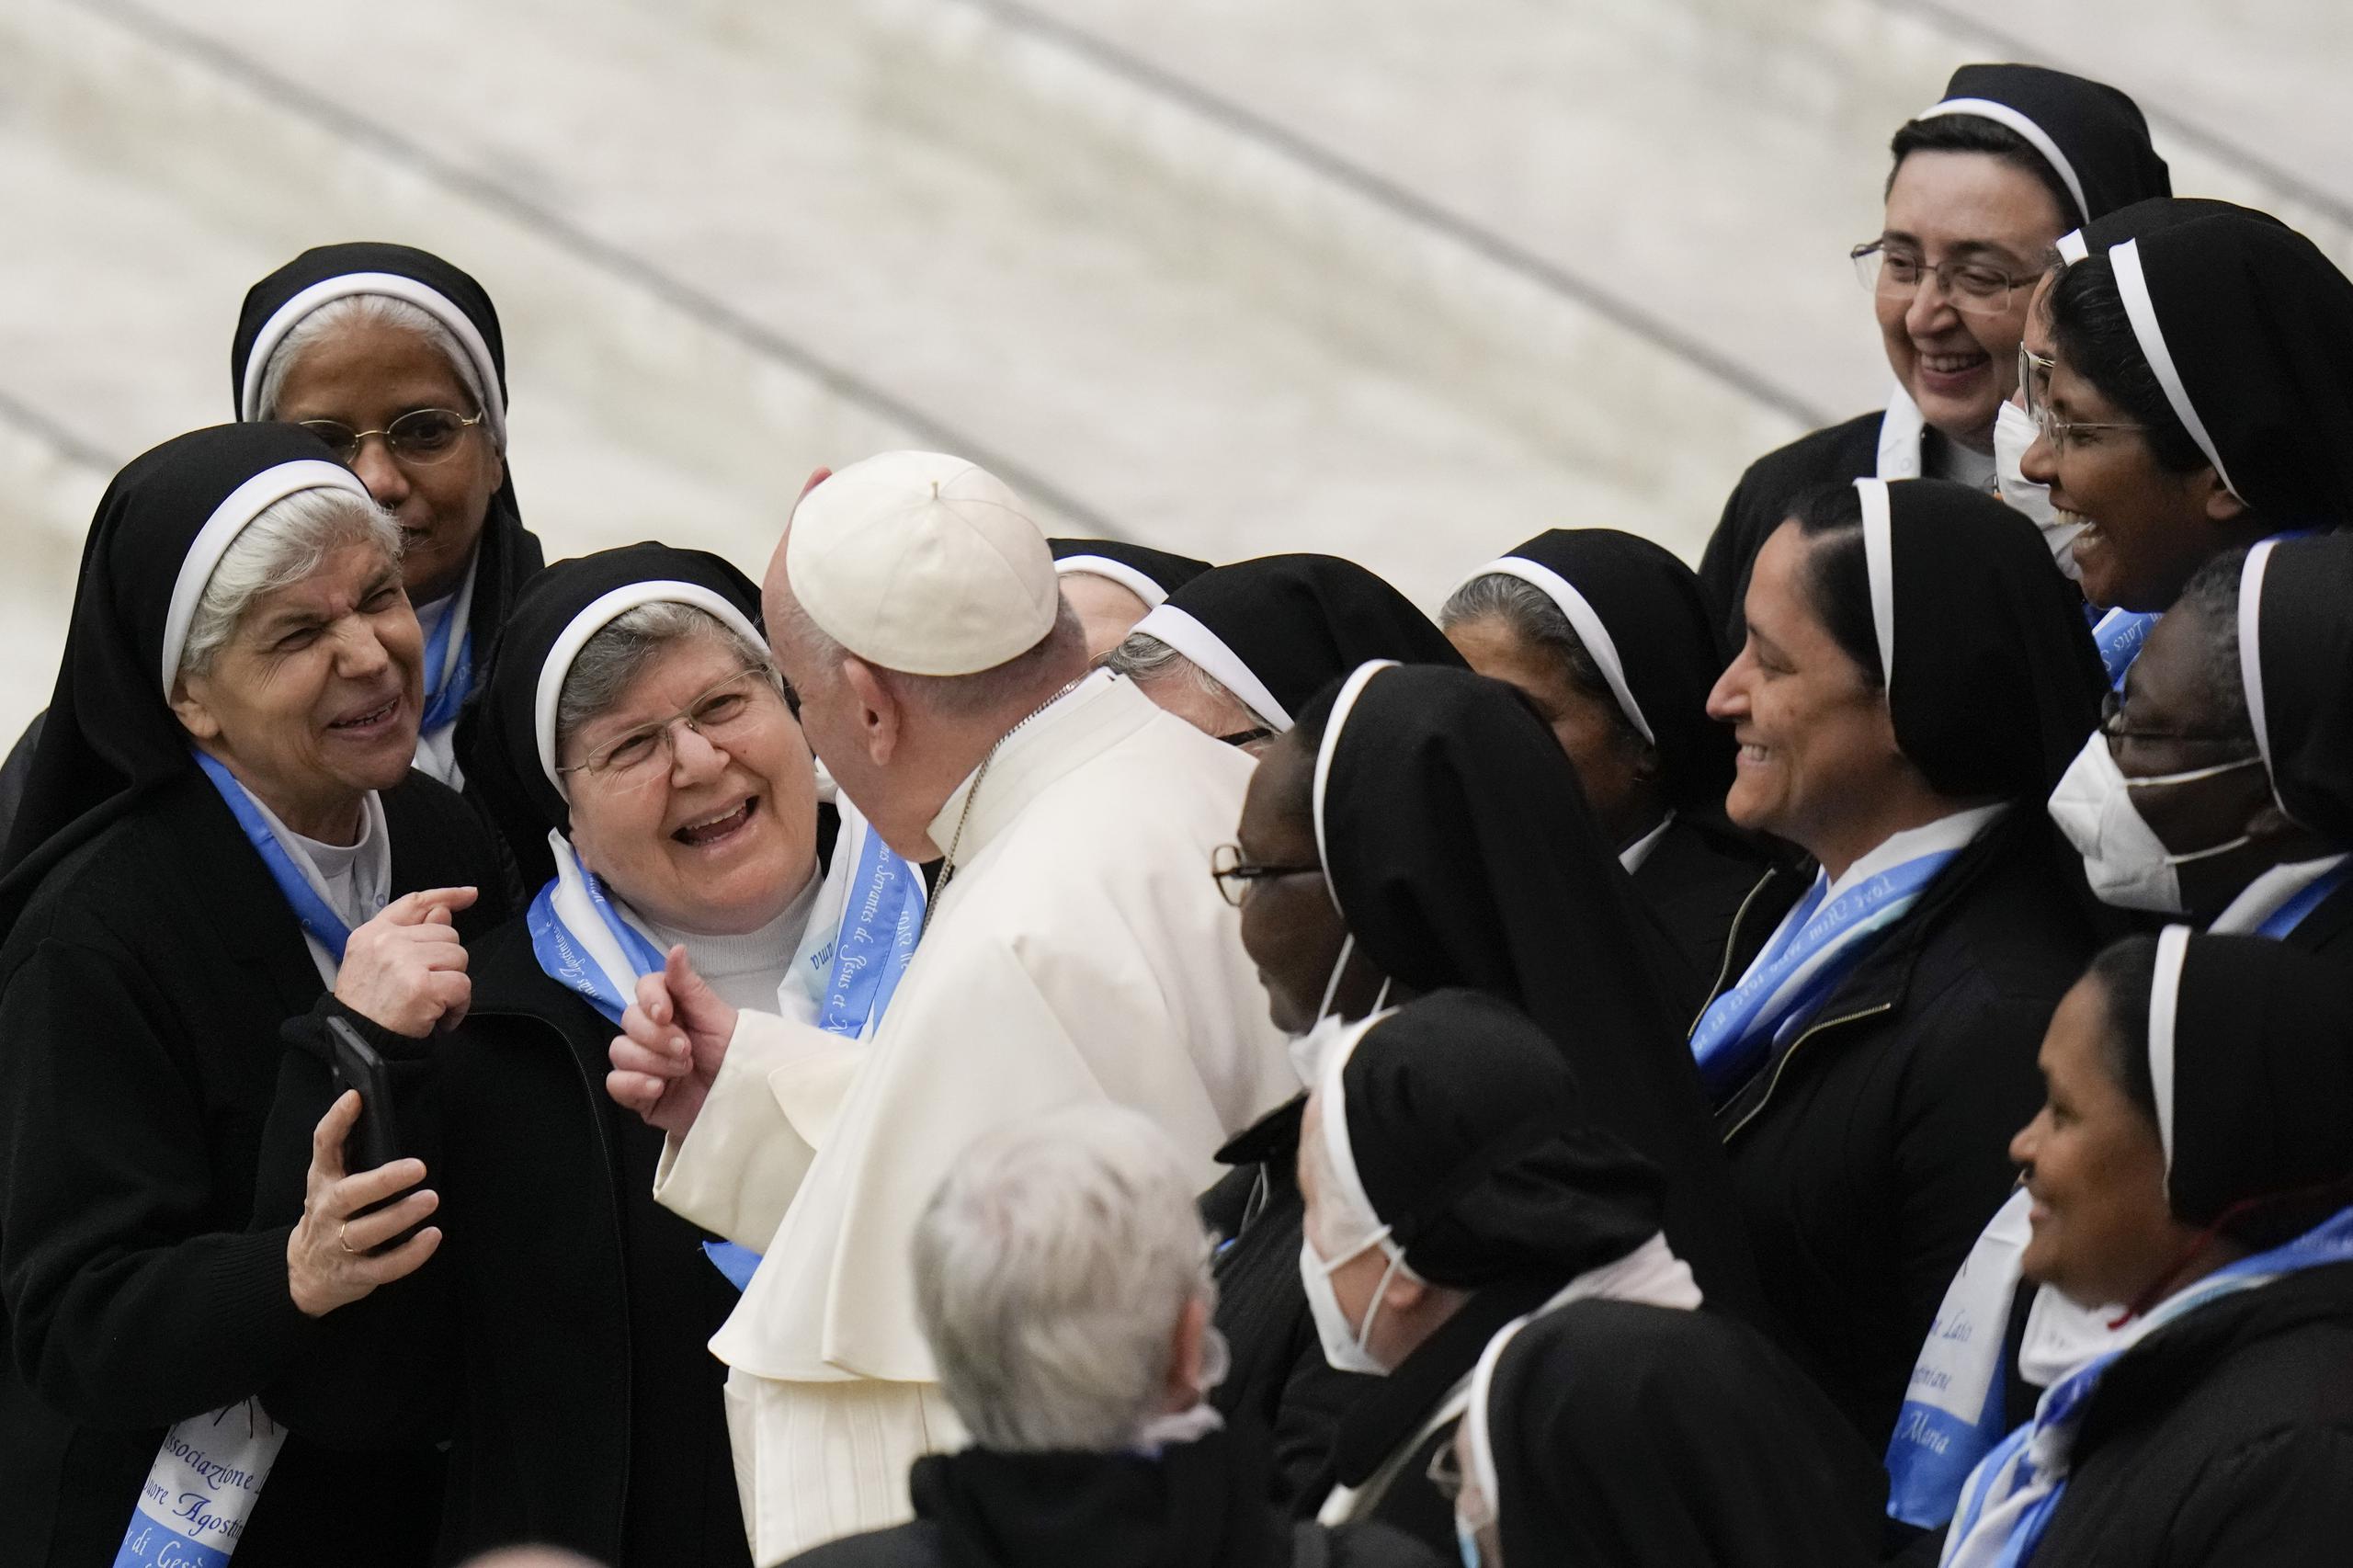 El Papa Francisco se reúne con un grupo de monjas durante su audiencia general semanal en el Salón Pablo VI, en el Vaticano, el miércoles 5 de enero de 2022 (AP Photo / Alessandra Tarantino).